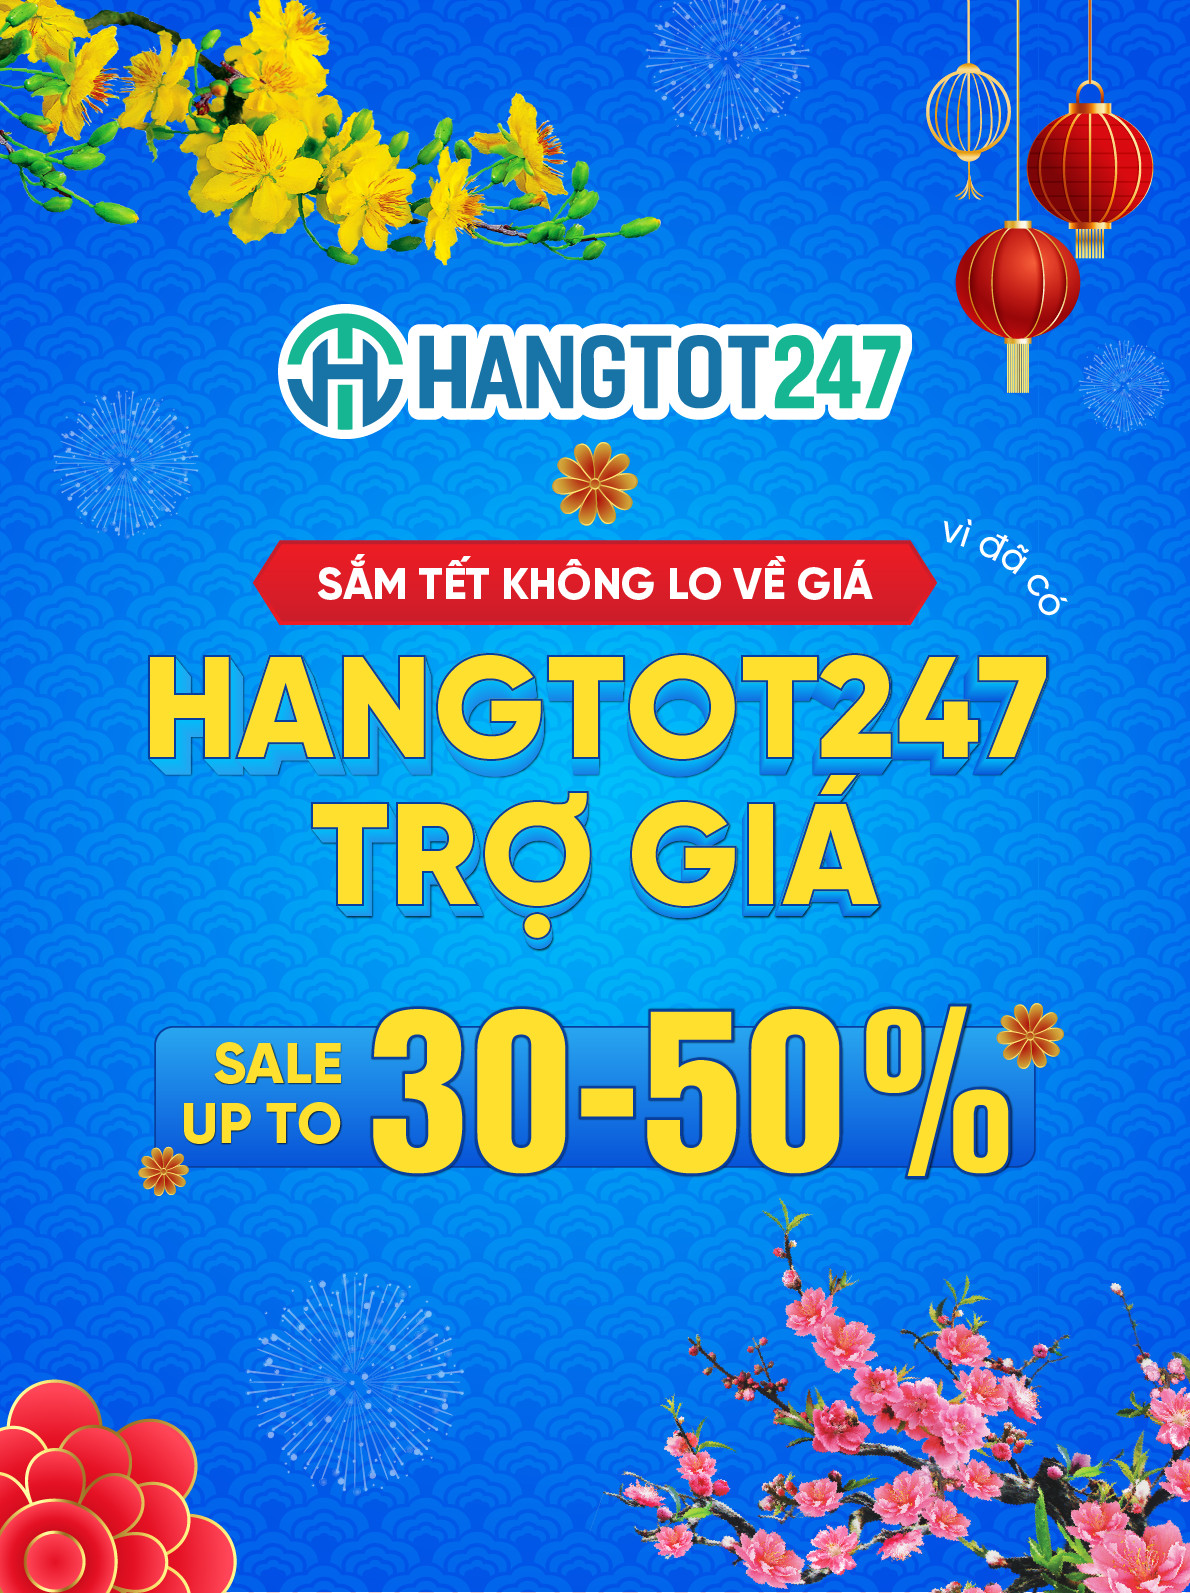 Hangtot247